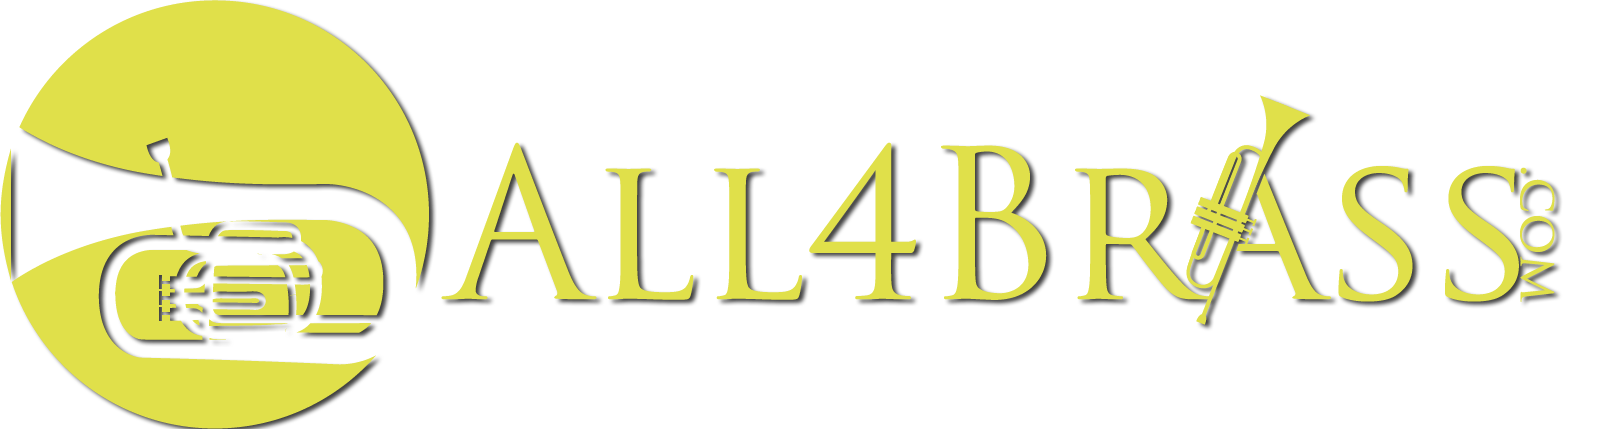 All4Brass: Brass Band News logo